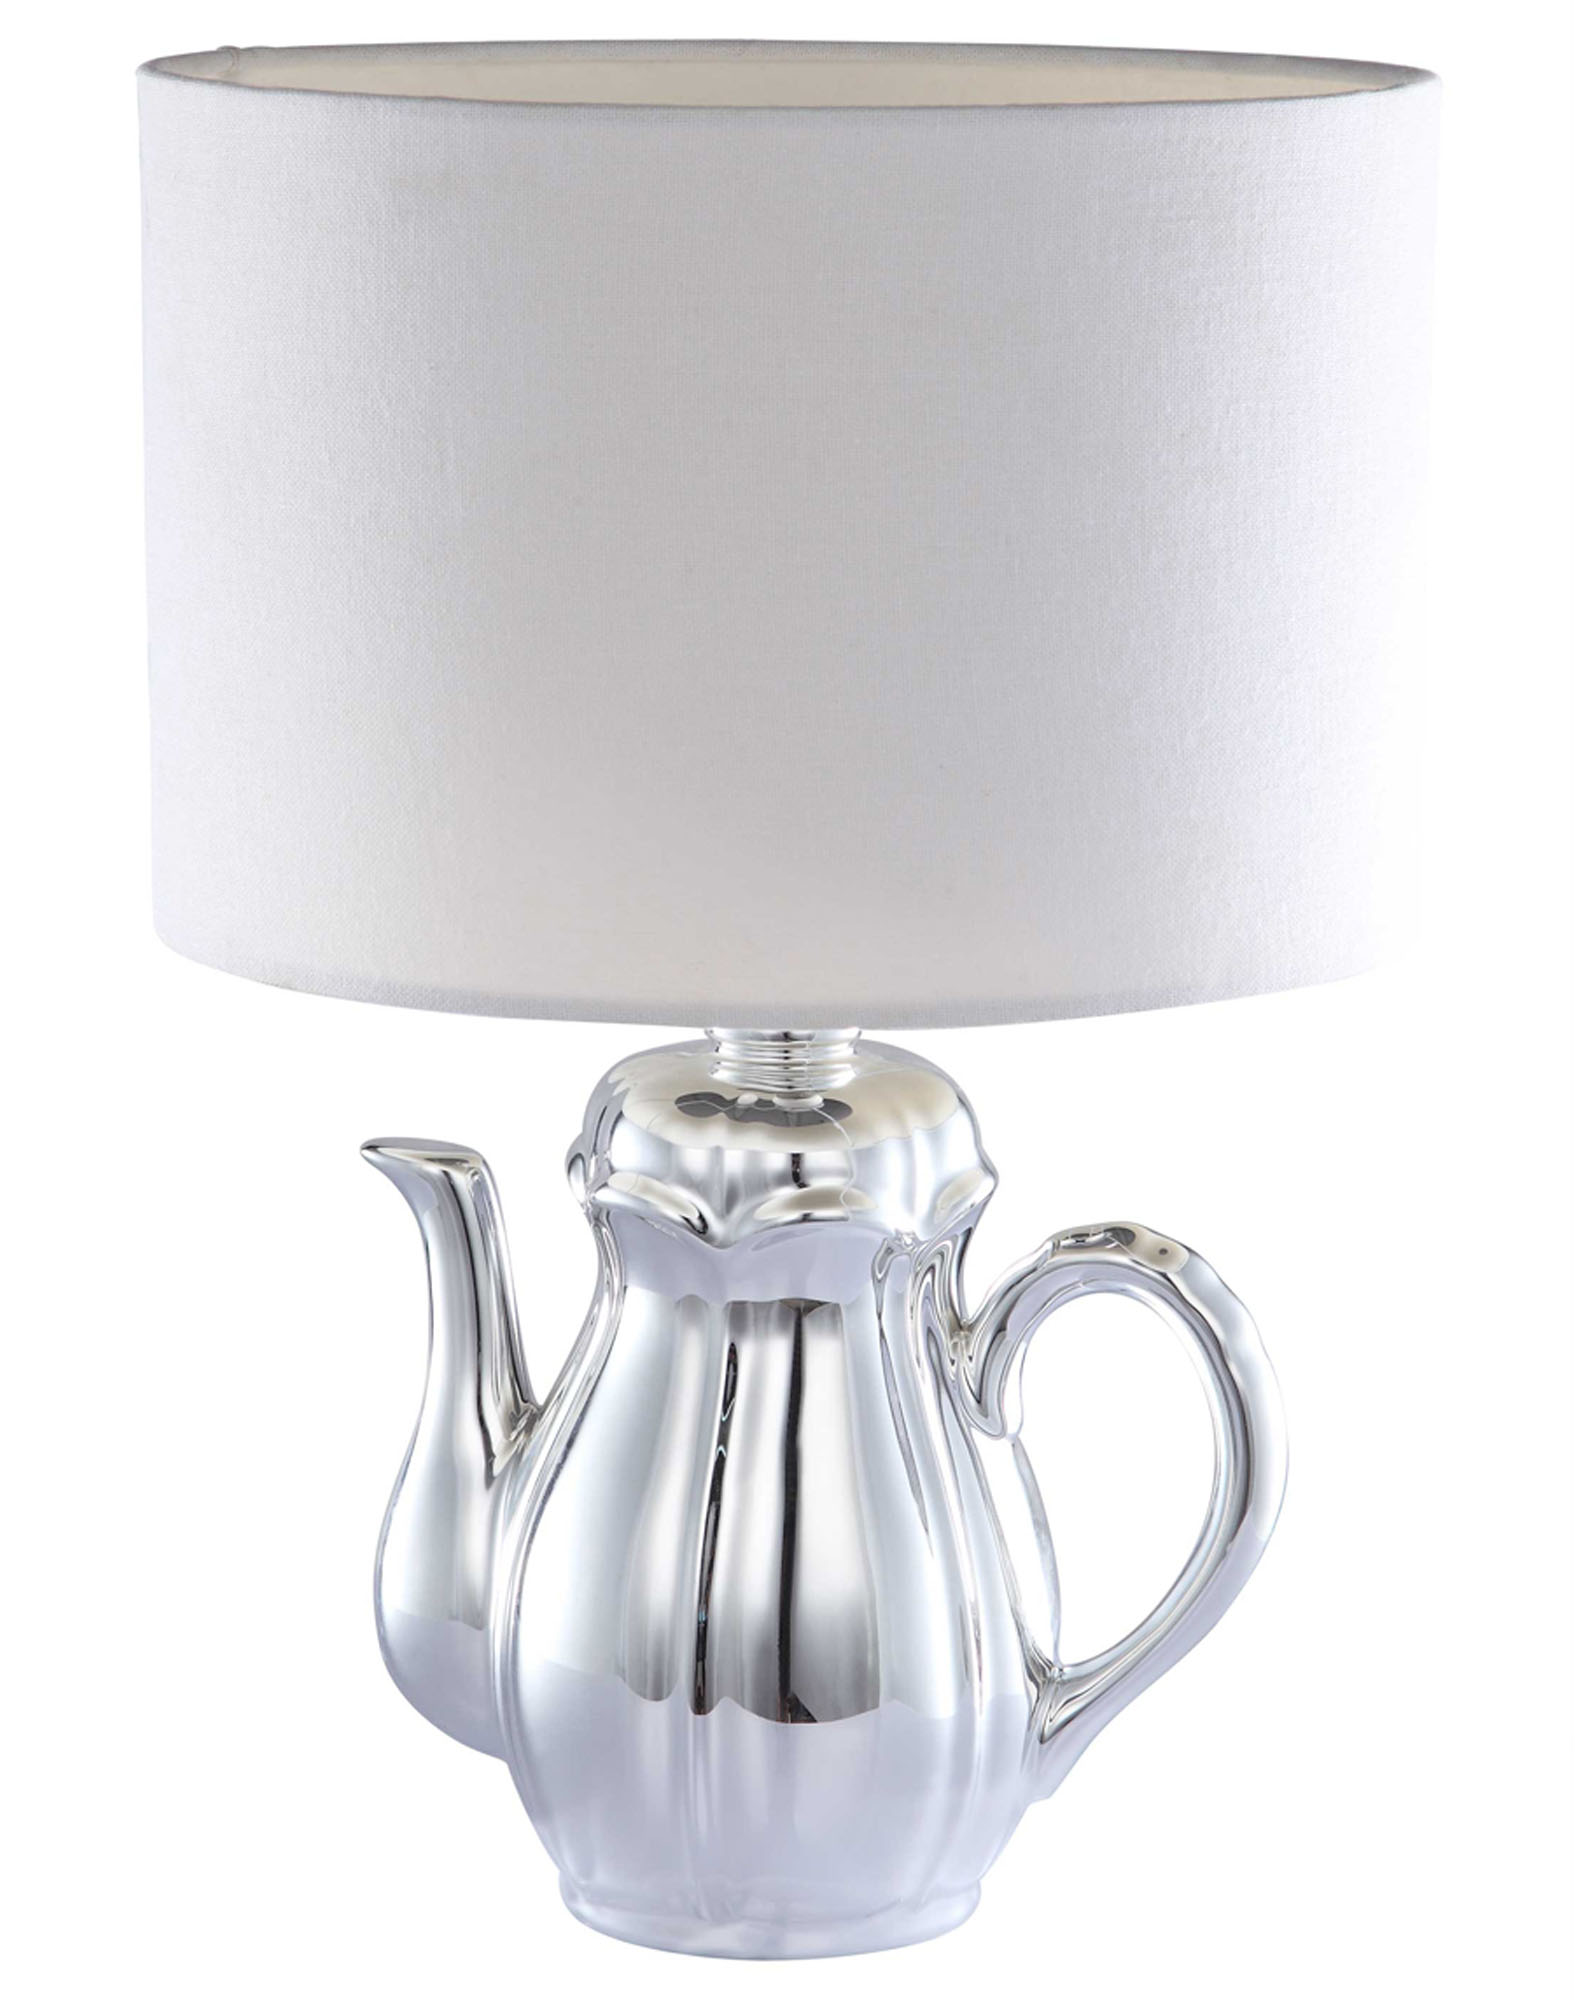 Teapot Chrome Table Lamp